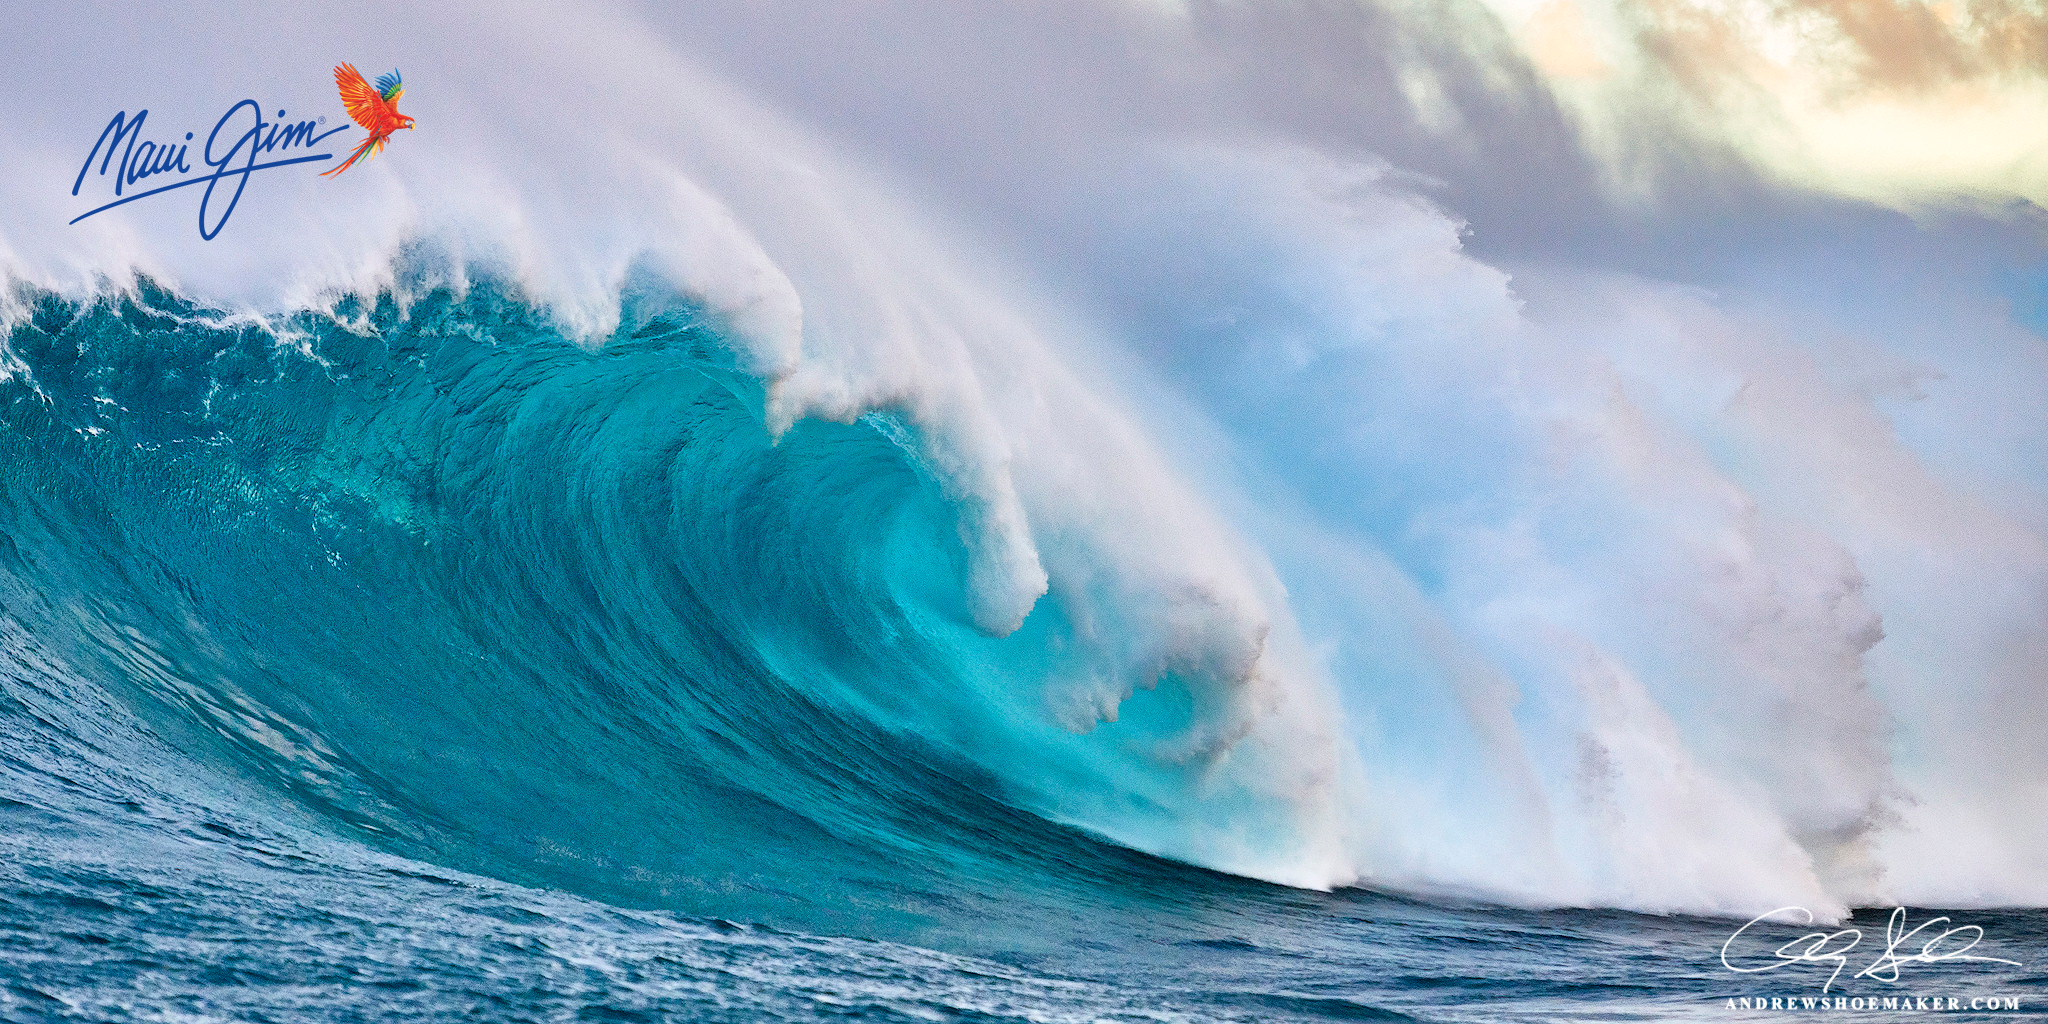 Maui Jim Waves